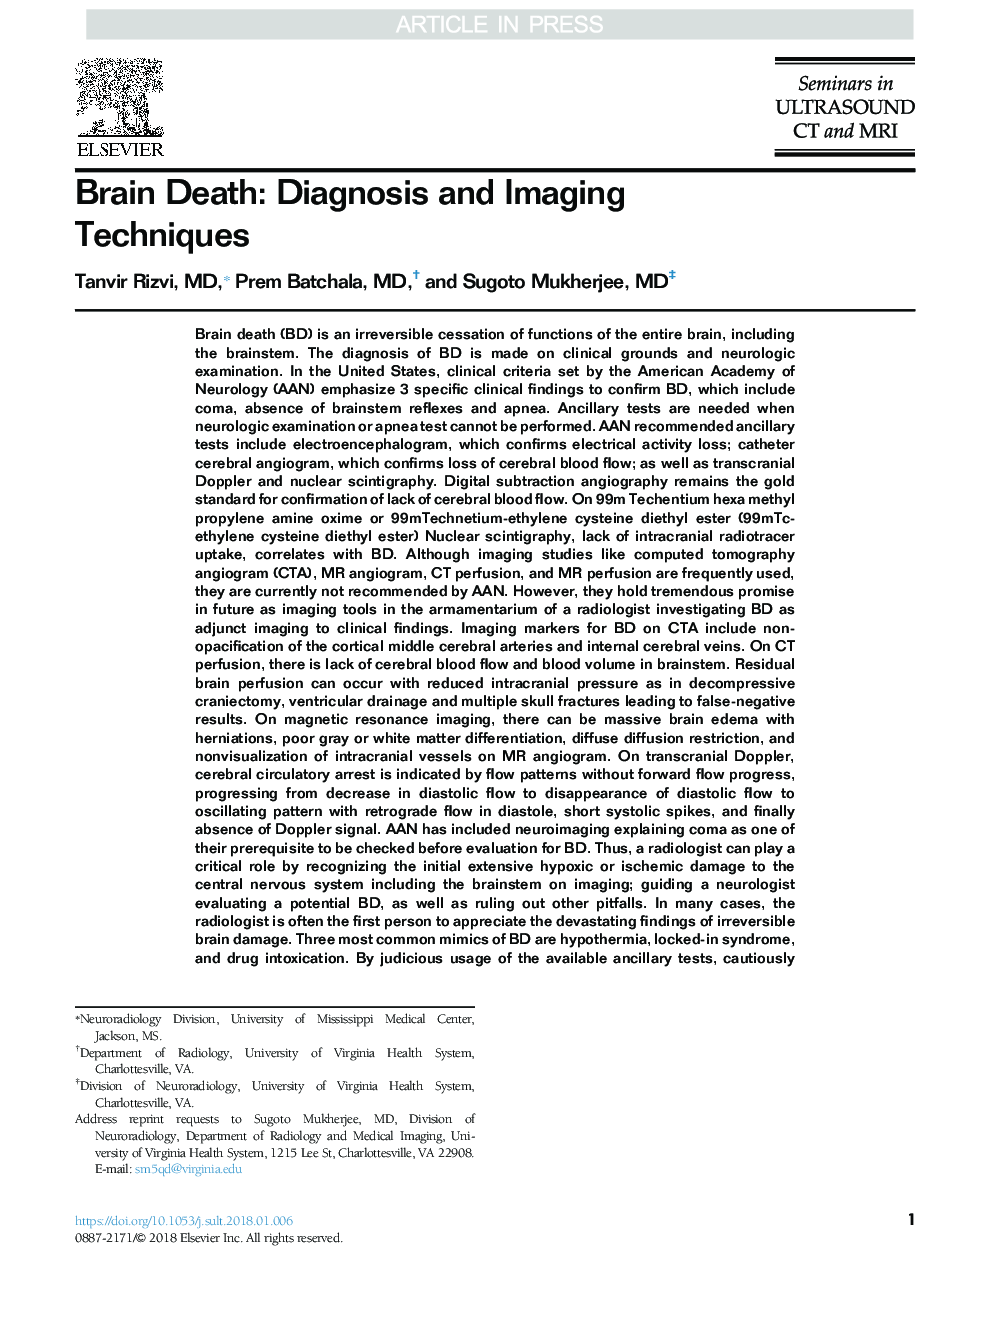 مرگ مغزی: تشخیص و تکنیک های تصویربرداری